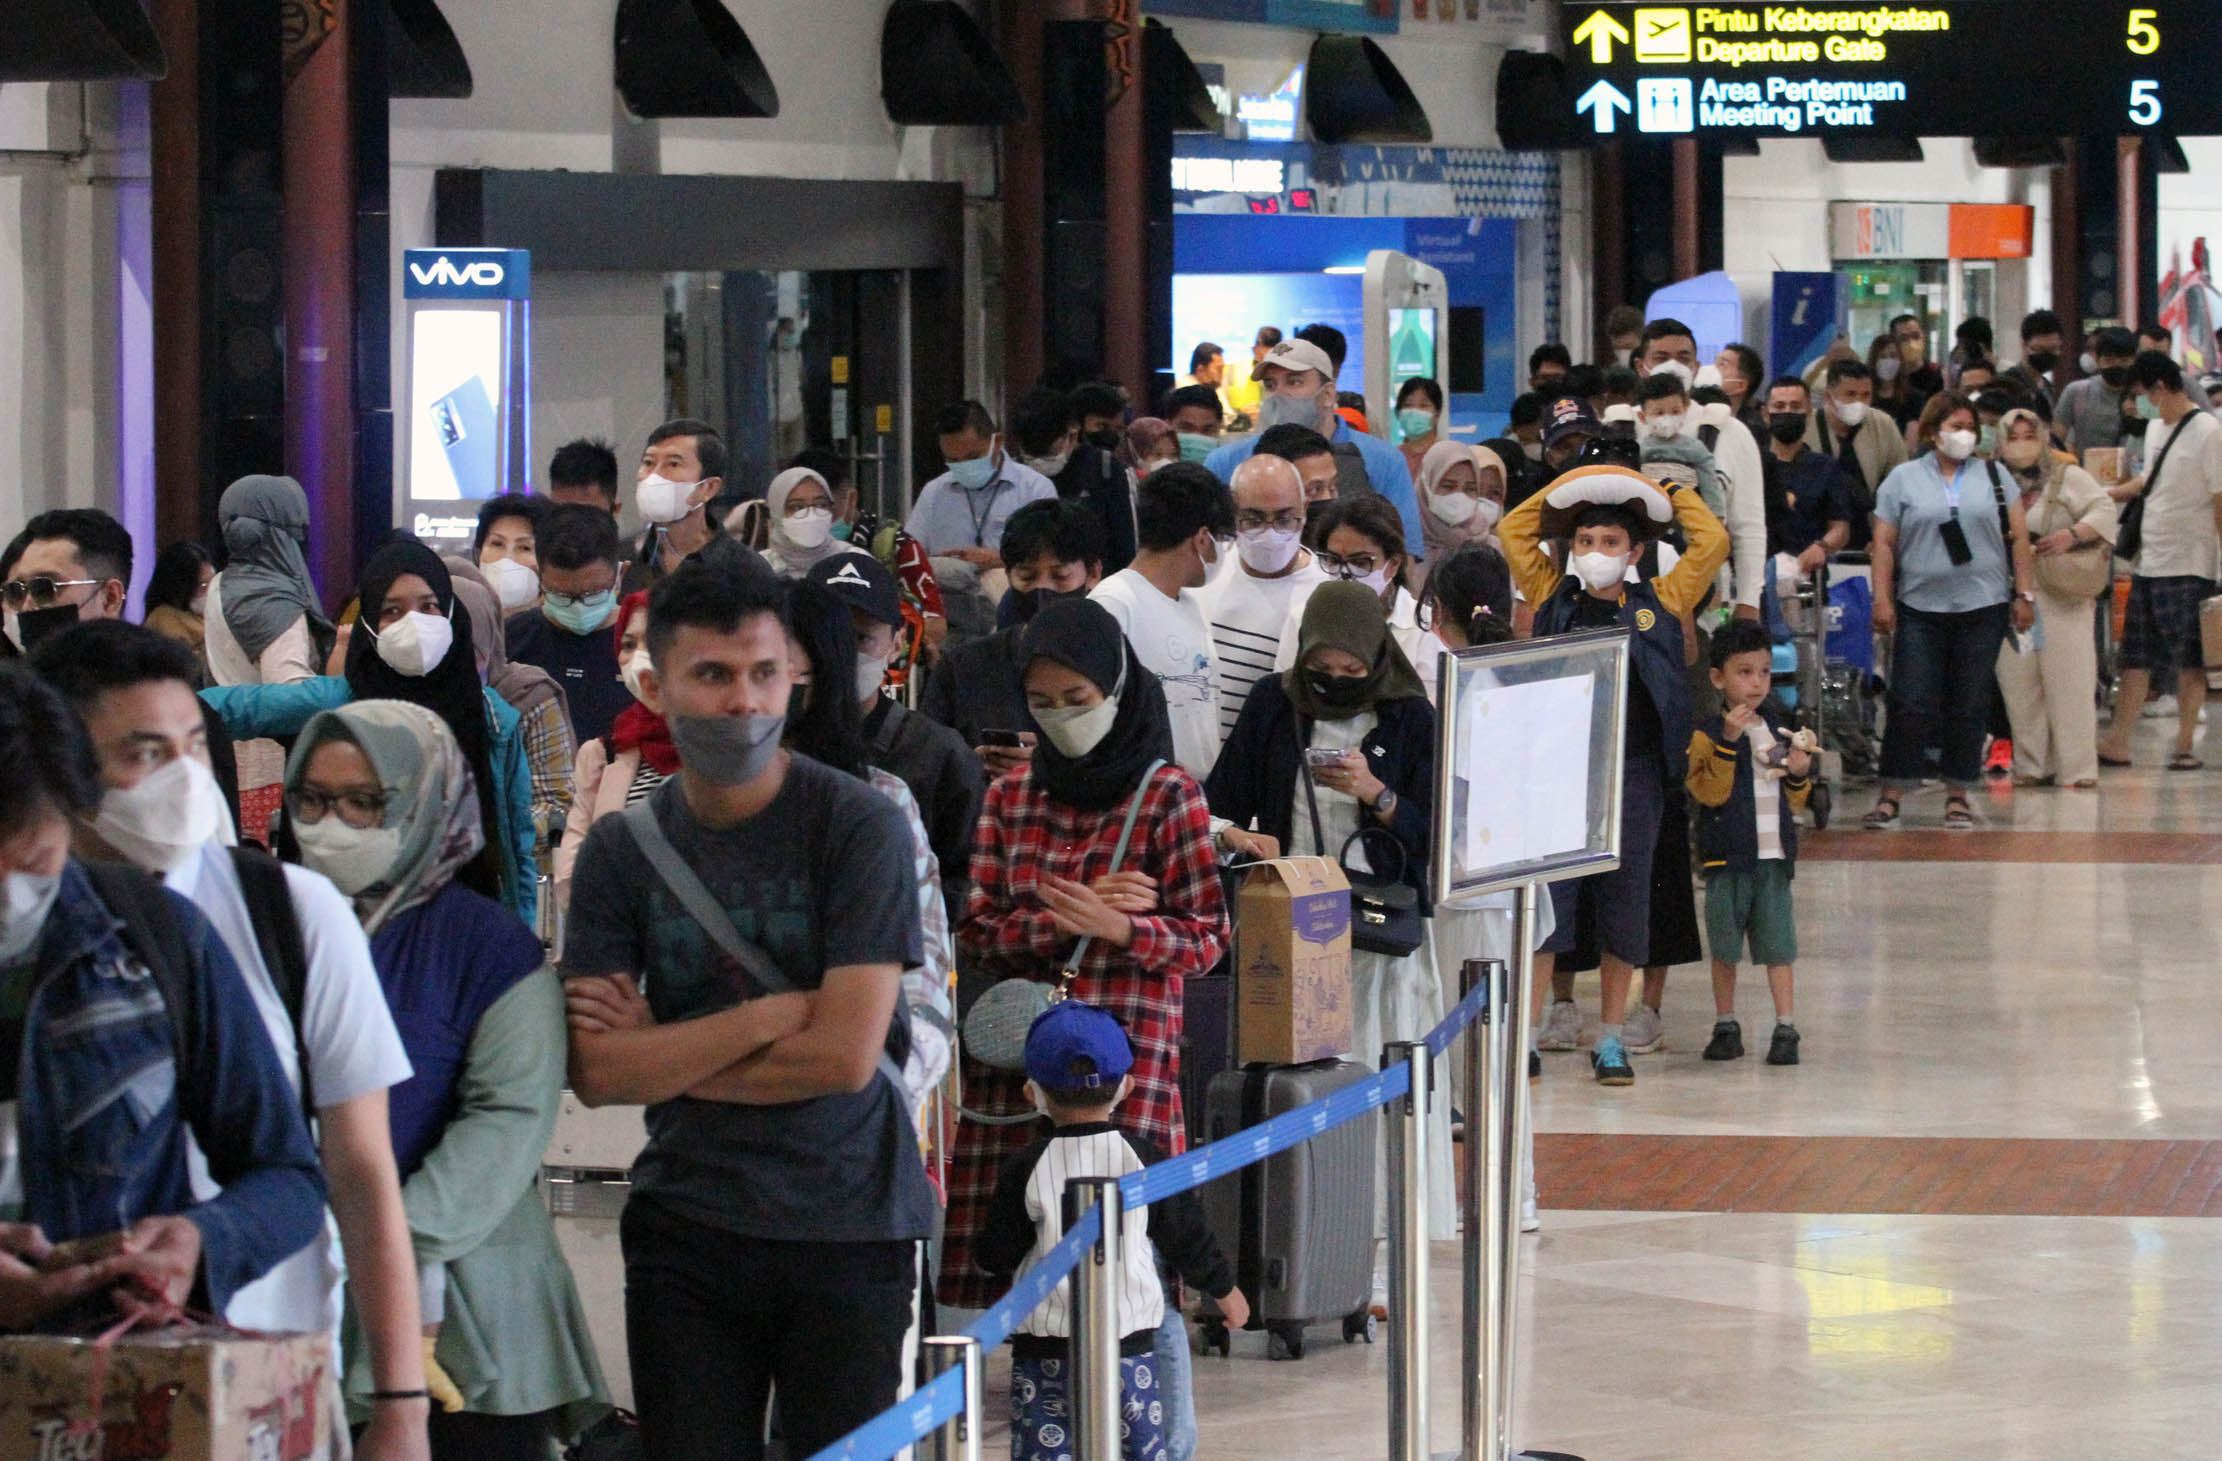 Puluhan ribu calon penumpang nampak memadati area check in counter Terminal 2 F Bandara Soekarno Hatta, Sabtu 30 April 2022. Diprediksi hari ini merupakan puncak arus mudik melalui jalur udara. Foto : Panji Asmoro/TrenAsia